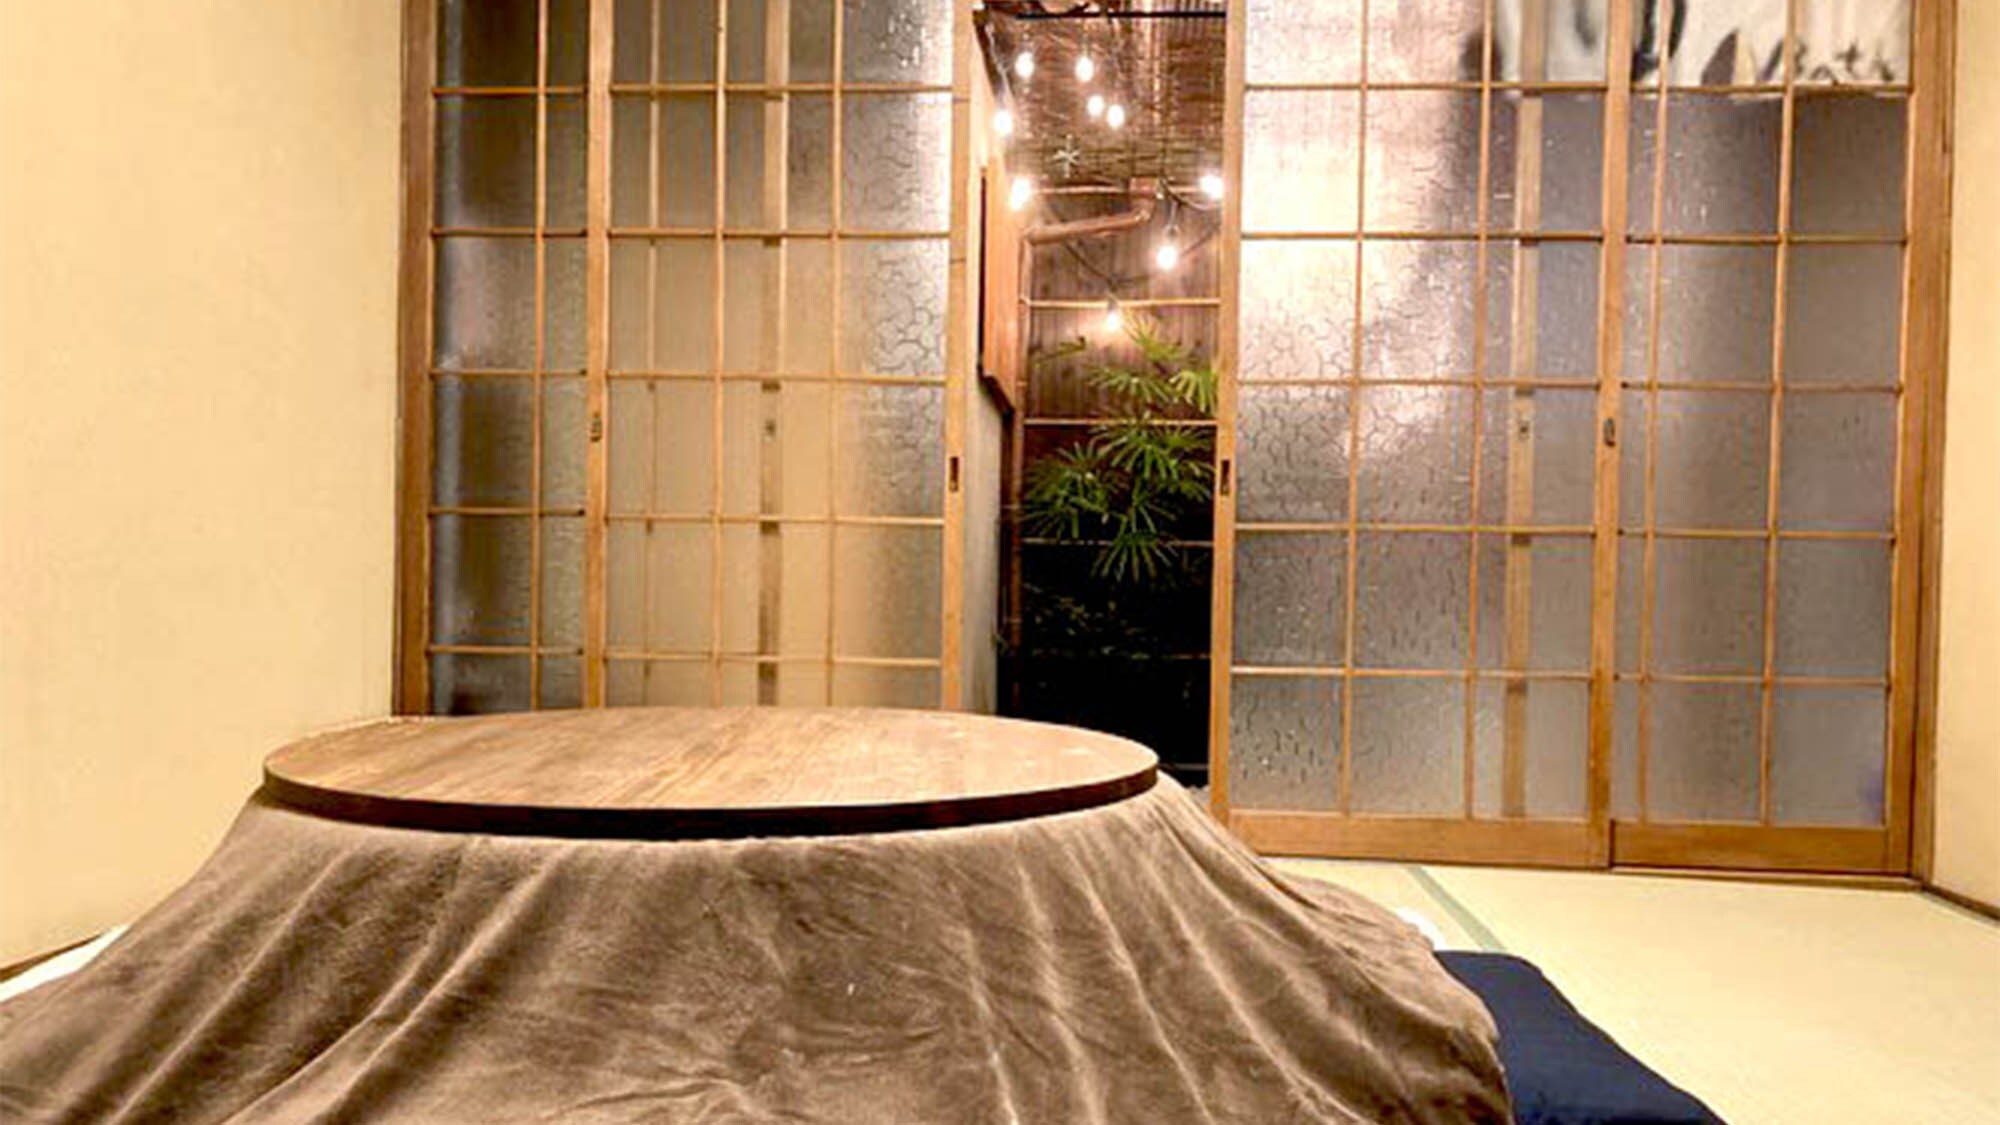 Di musim dingin, Anda dapat menghabiskan waktu bersantai di kamar Anda sambil menghangatkan diri dengan kotatsu.